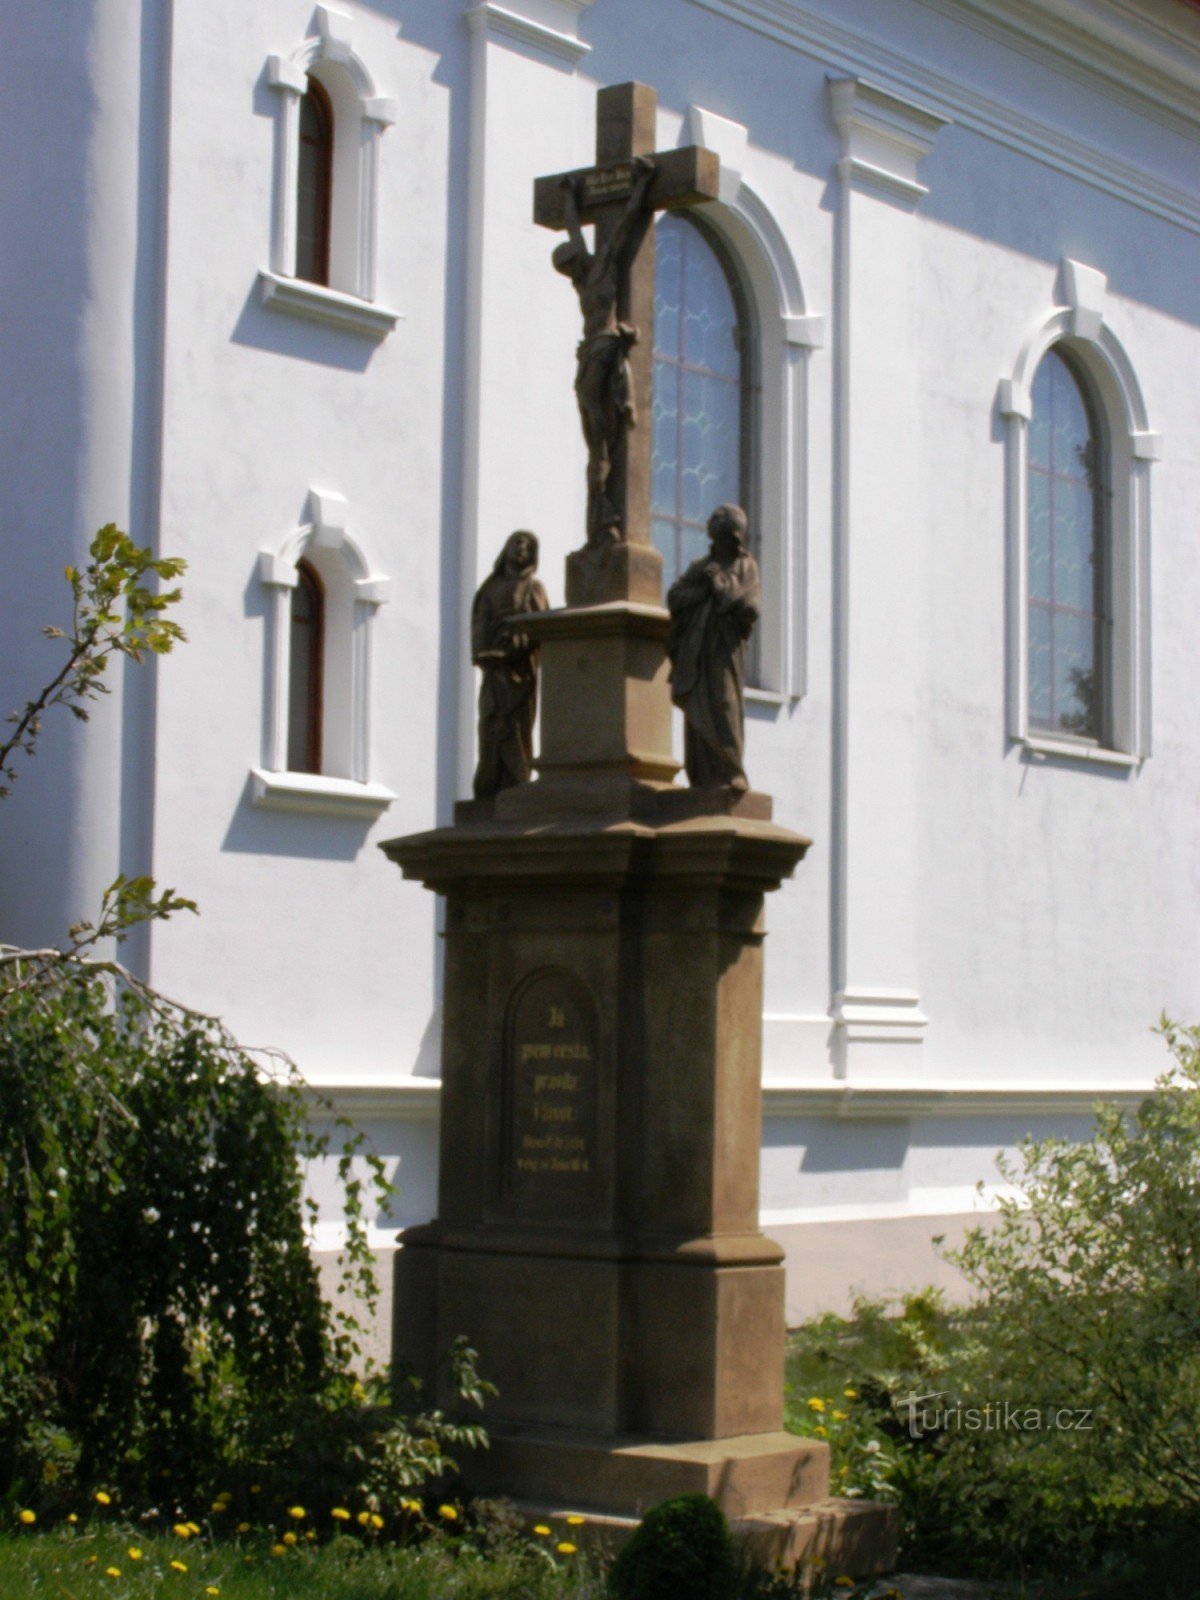 Pohorí - crkva sv. Ivana Krstitelja